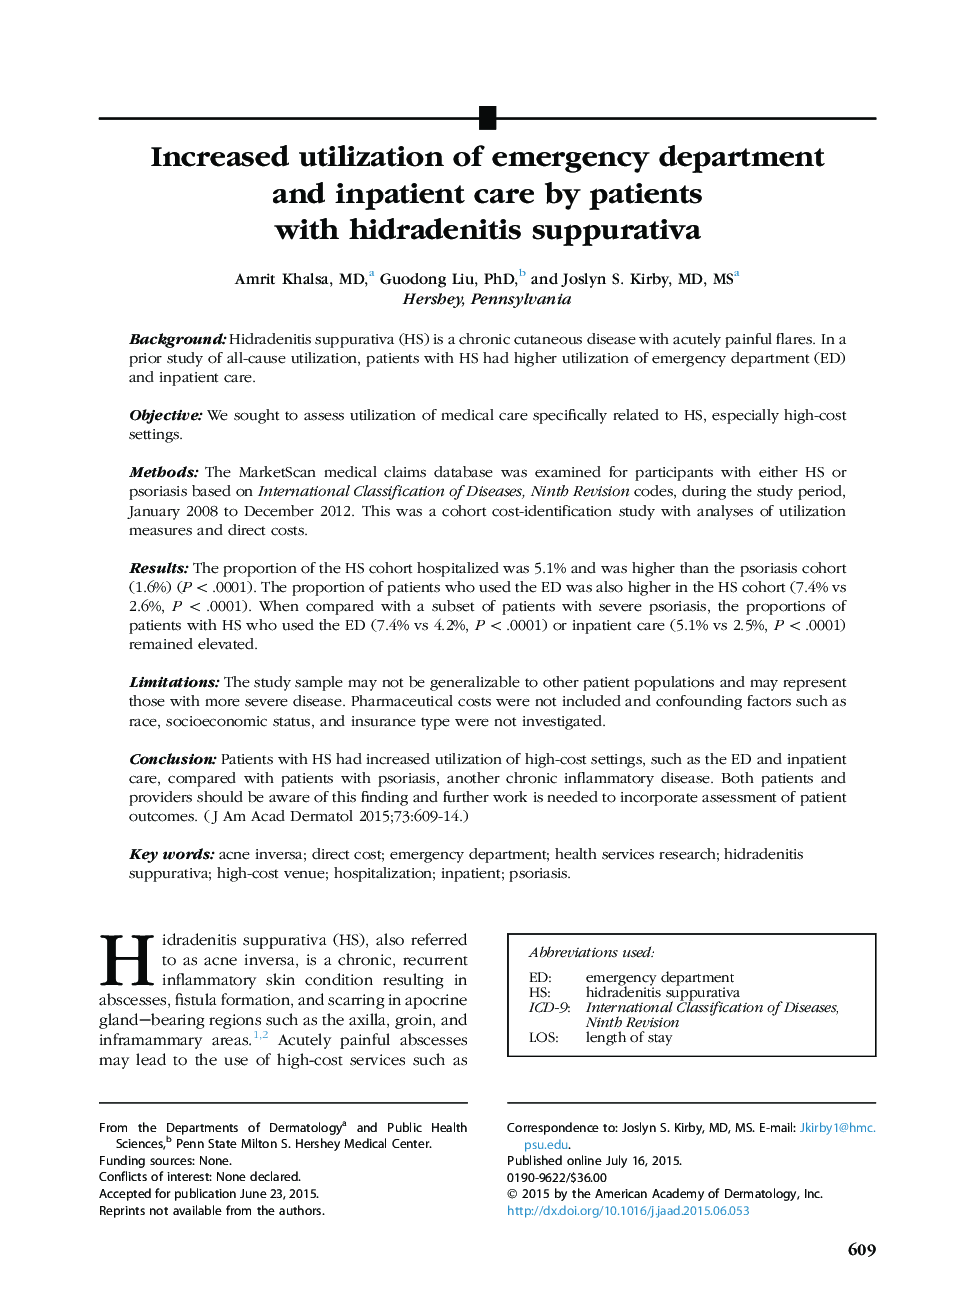 مقاله اصلی افزایش استفاده از بخش اورژانس و مراقبت های سرپایی توسط بیماران مبتلا به هیدرادنیت سوپوراتیوا 